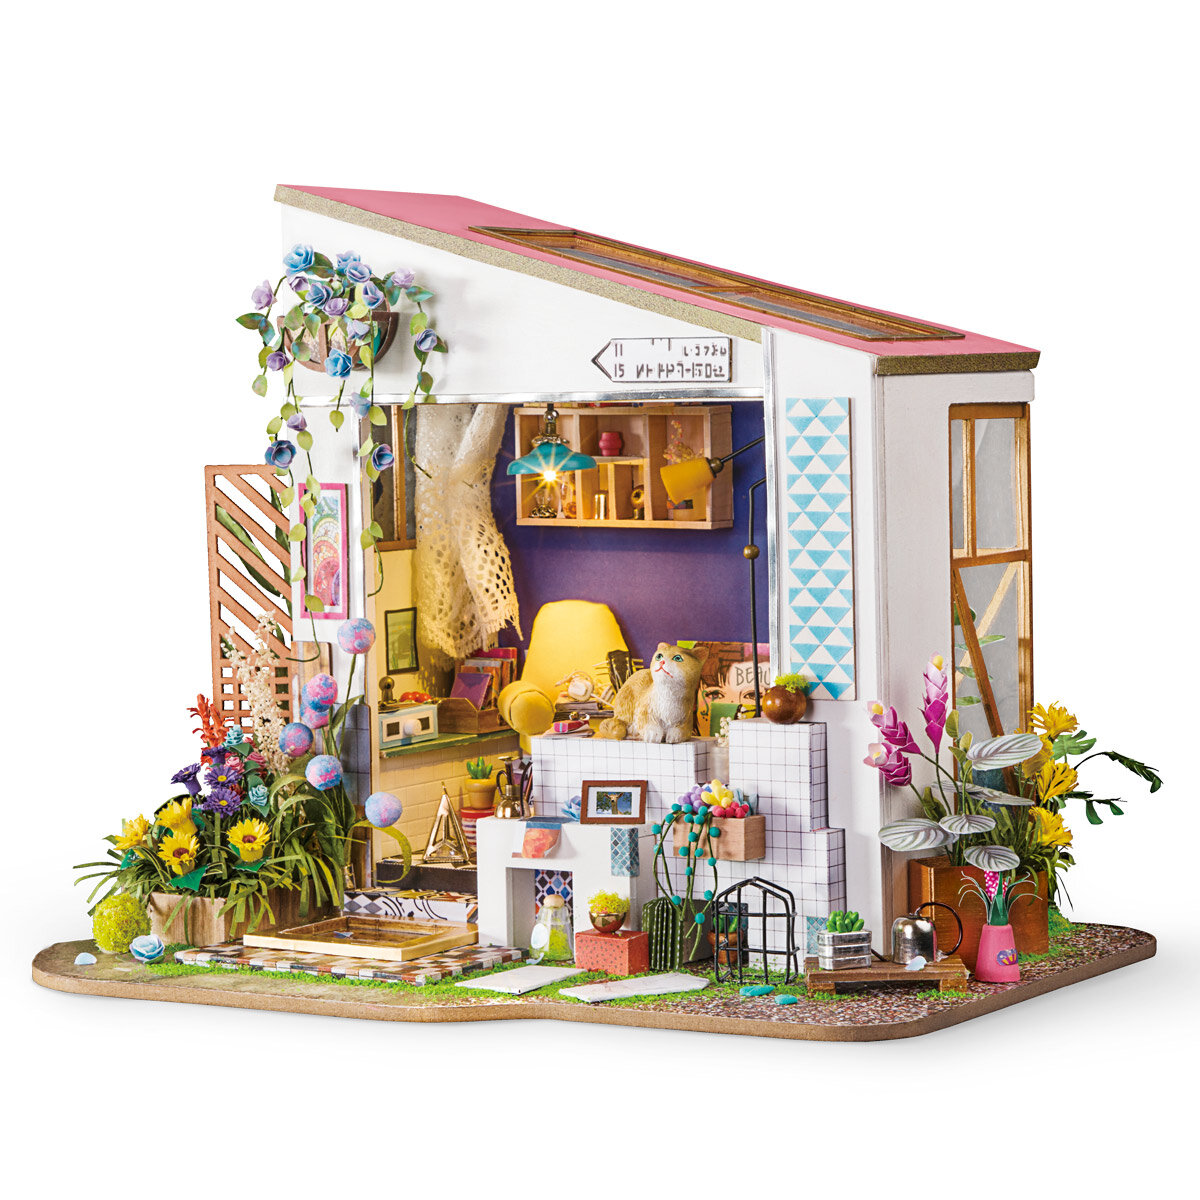 Casa en miniatura - El porche de Lily Rolife DG11